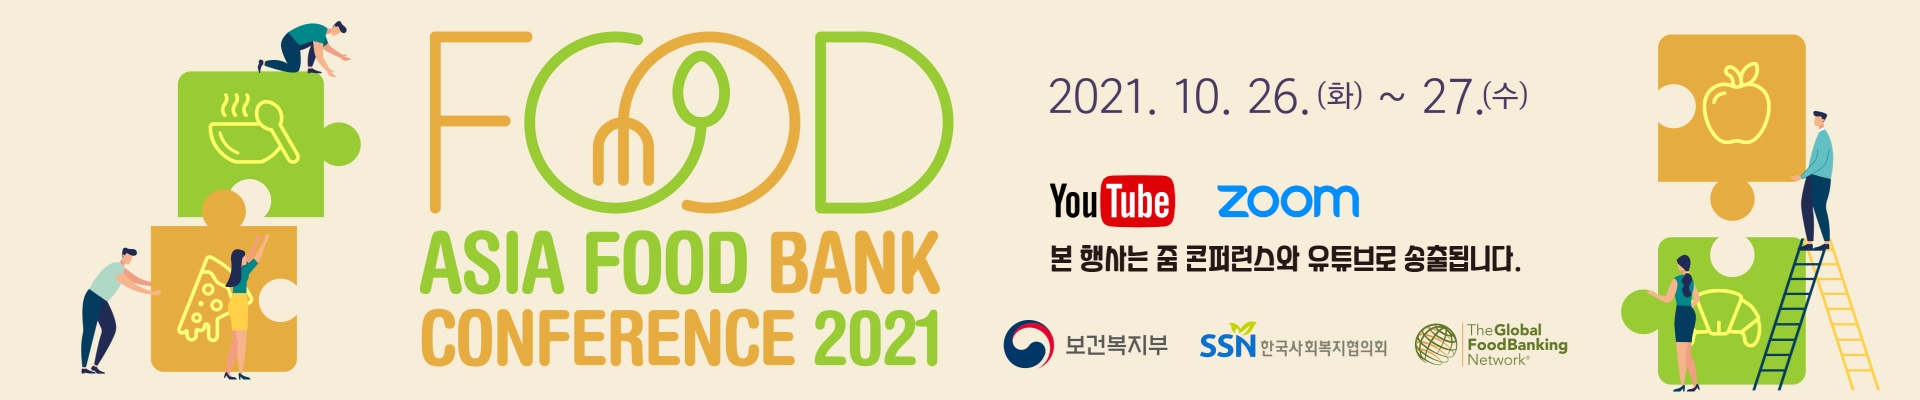 2021 아시아 푸드뱅크 콘퍼런스